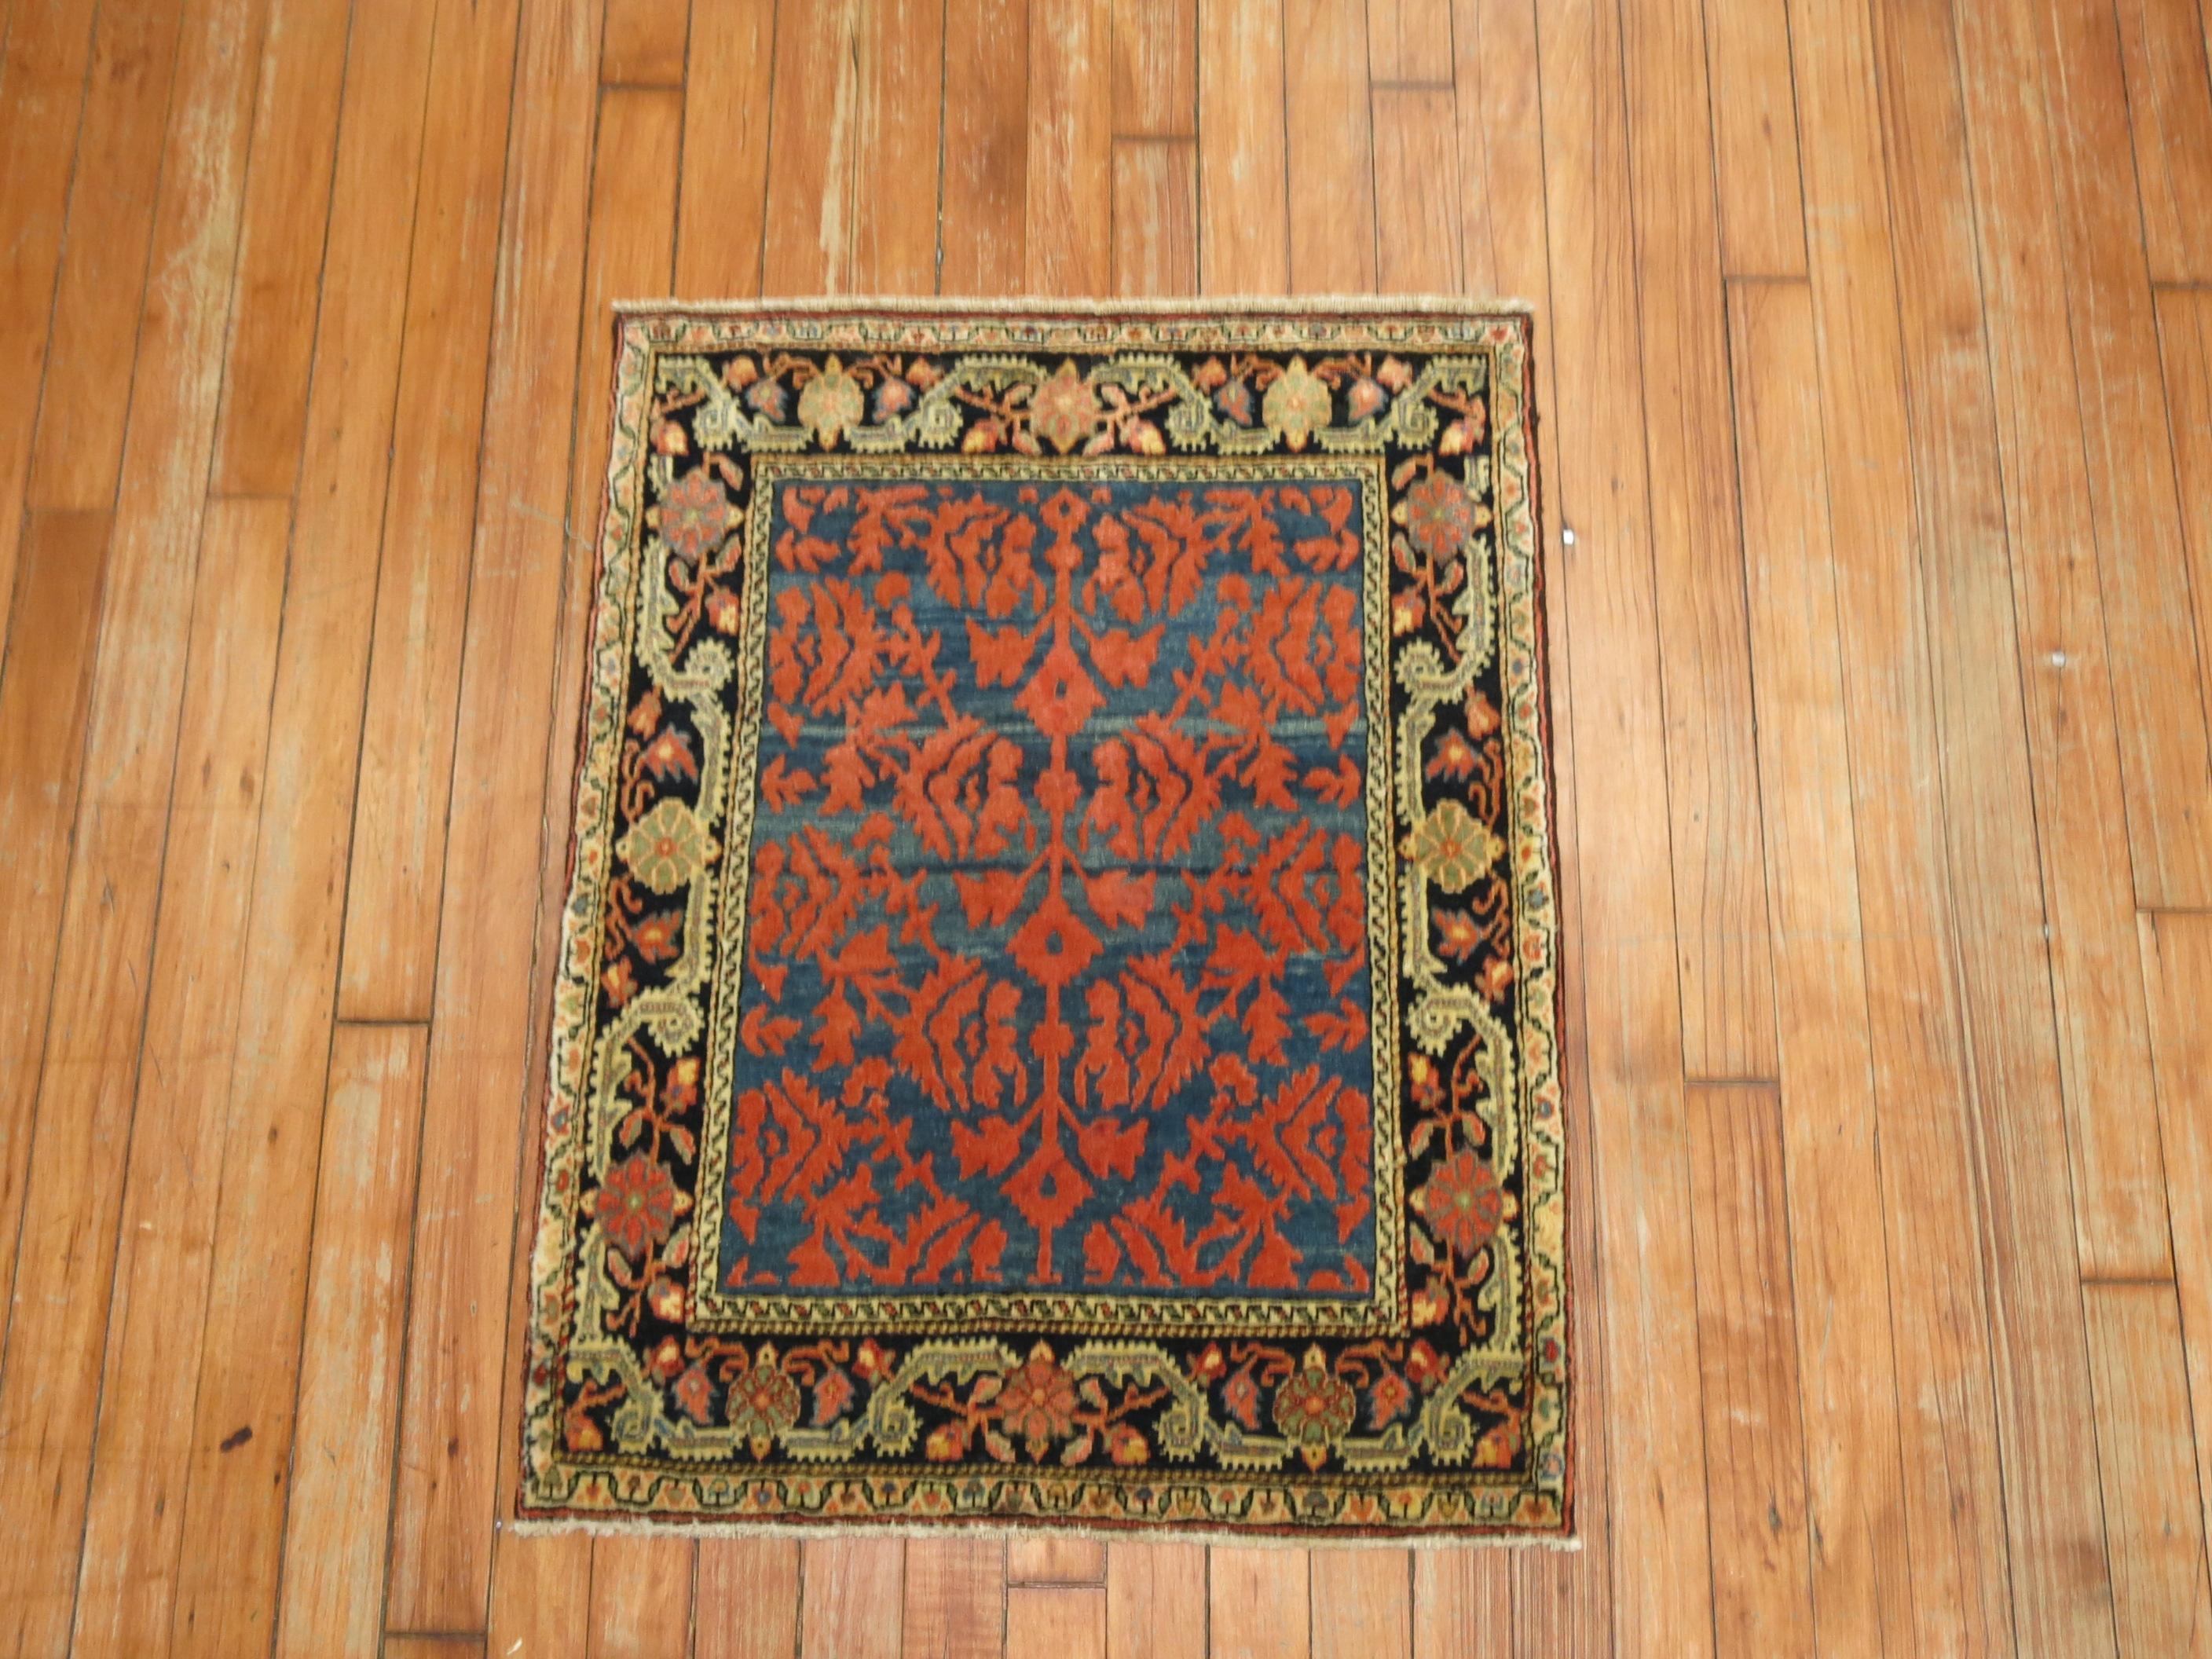 Ein Souf-Teppich aus dem frühen 20. Jahrhundert, der irgendwo im Iran gewebt wurde. 

Souf-Teppiche sind eine sehr seltene Technik, da sie einen erhöhten niedrigen und hohen Flor haben. Sie sind im Iran sehr beliebt und werden anderswo kaum